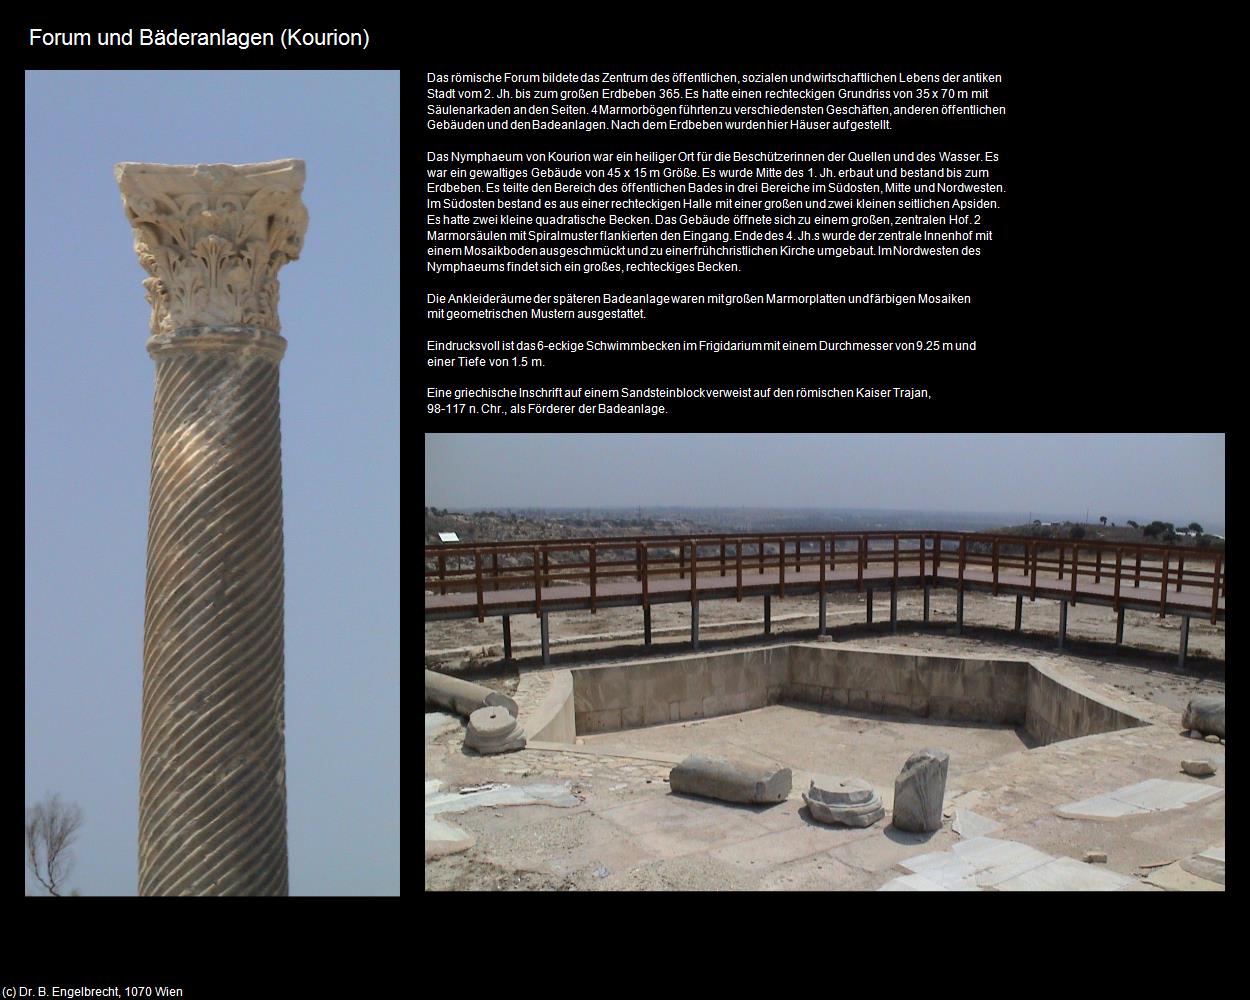 Forum und Bäderanlagen (Kourion) in ZYPERN-Insel der Aphrodite